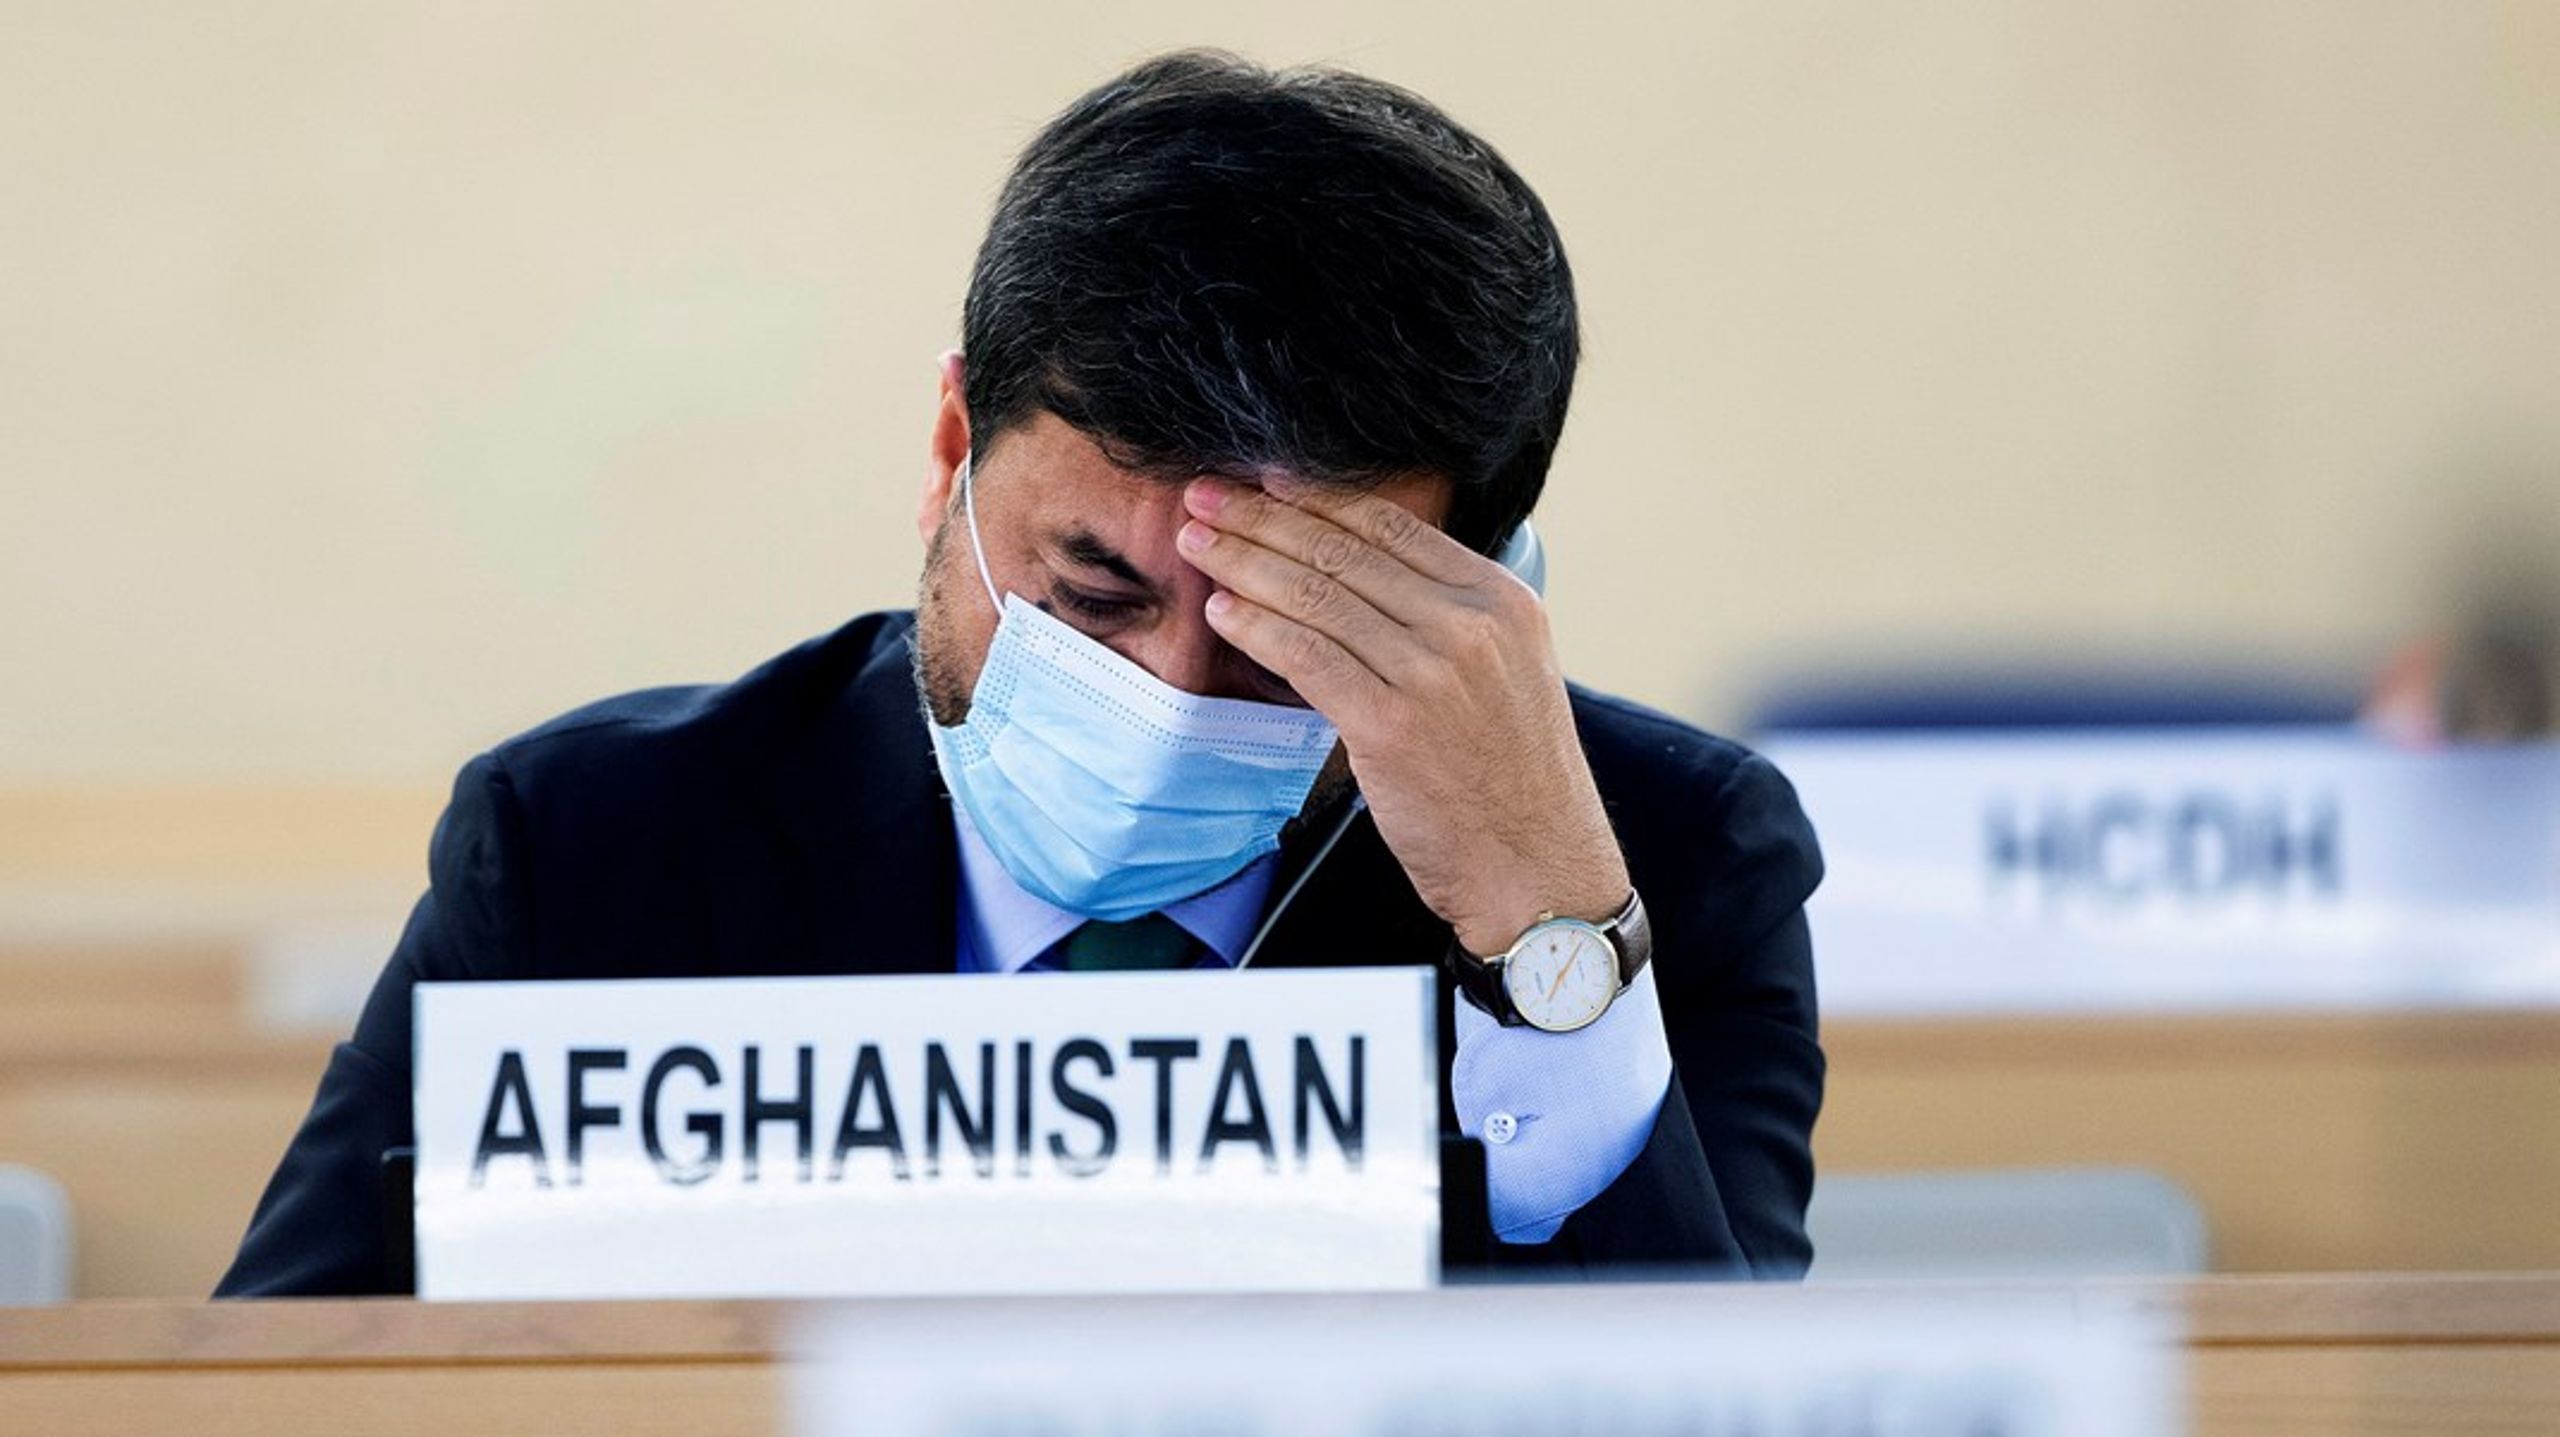 På initiativ av Afghanistan och Pakistan hade FN:s råd för mänskliga rättigheter ett specialinsatt möte igår tisdag om situationen i Afghanistan. Afghanistans representant Dr. Nasir Ahmad Andisha lyssnar på ett anförande under mötet.